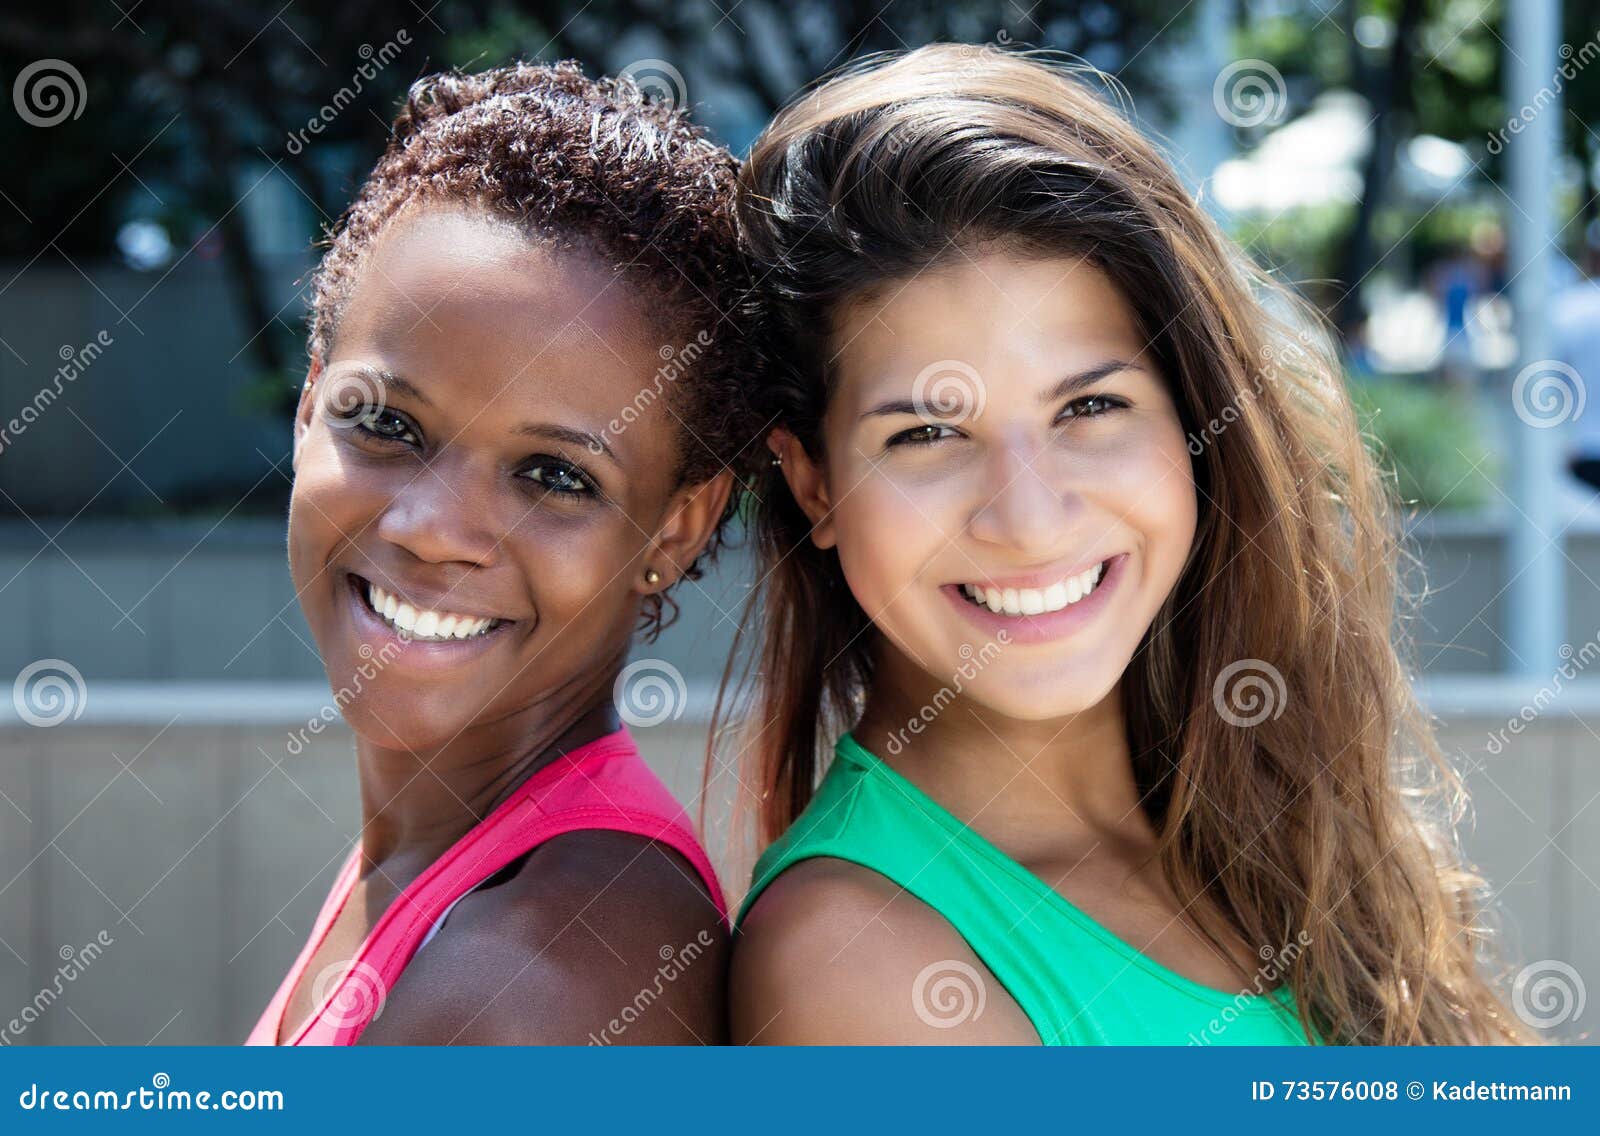 小组有年轻的非裔美国人的拉丁和白种人女孩 库存图片. 图片 包括有 愉快, 亚马逊, 国际, 幸福, 破擦声 - 90080195